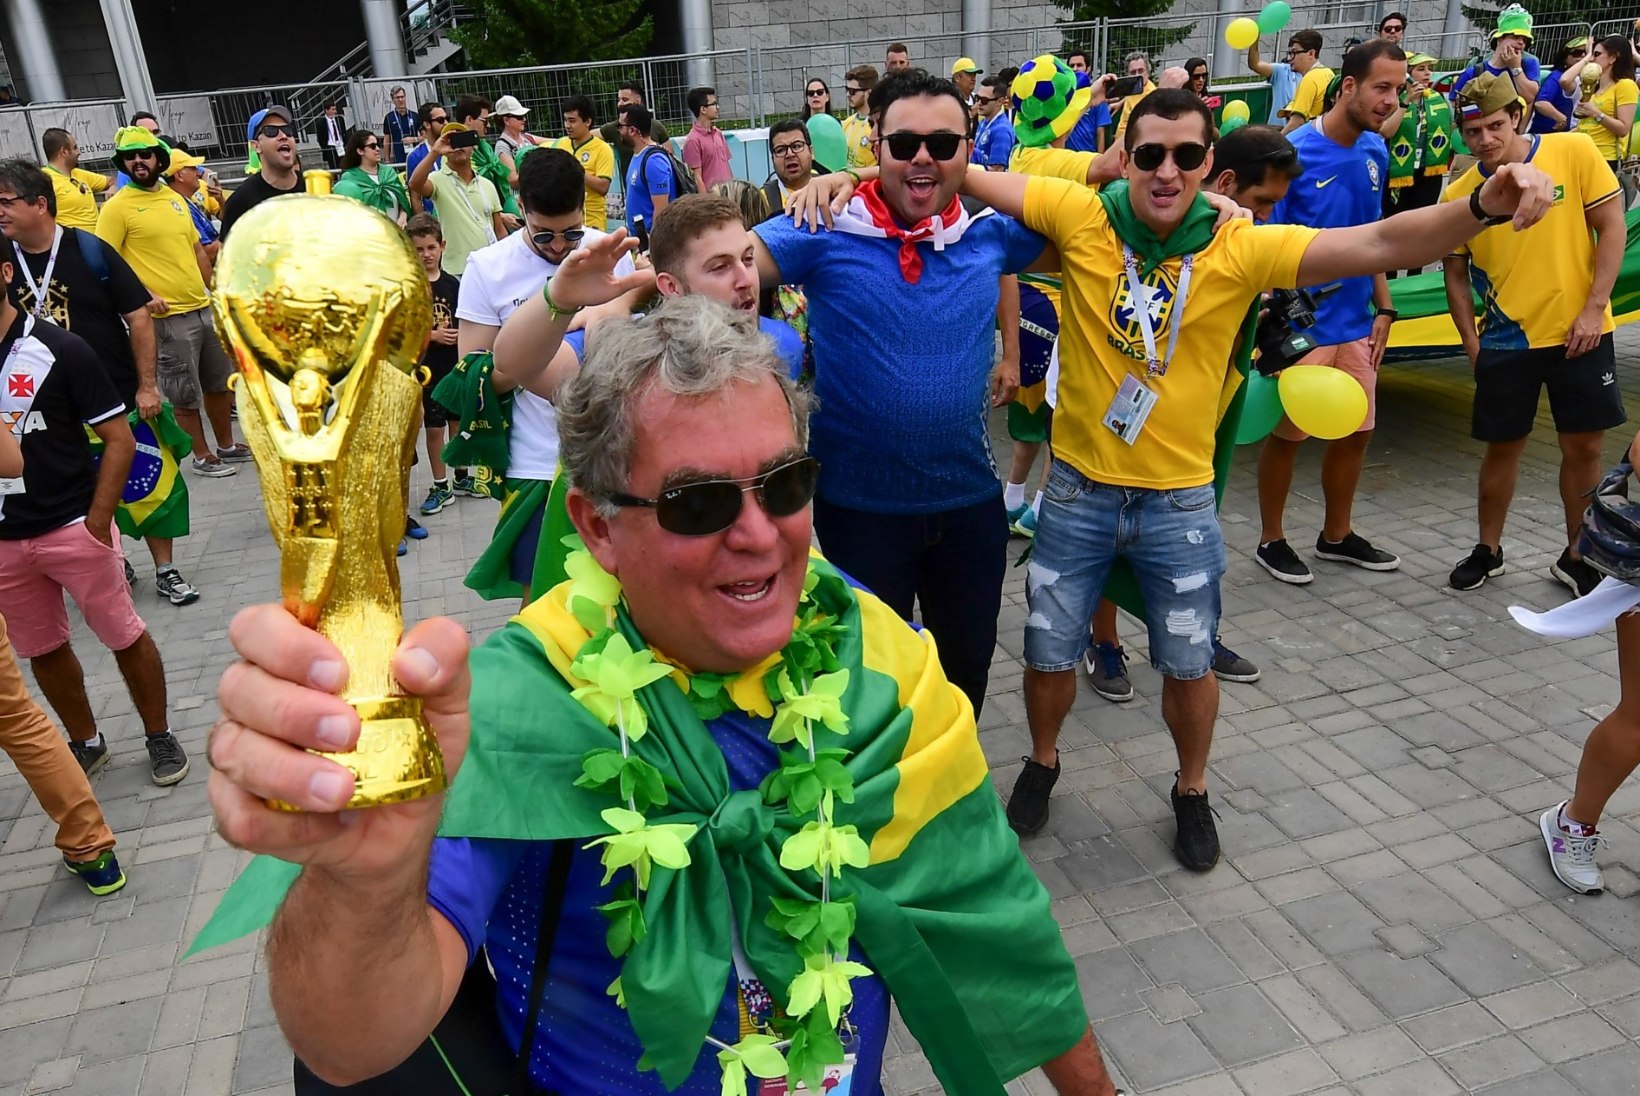 MMi STUUDIO | Suurturniir läheneb lõpule: kas tiitel on Brasiilia kaotada? 